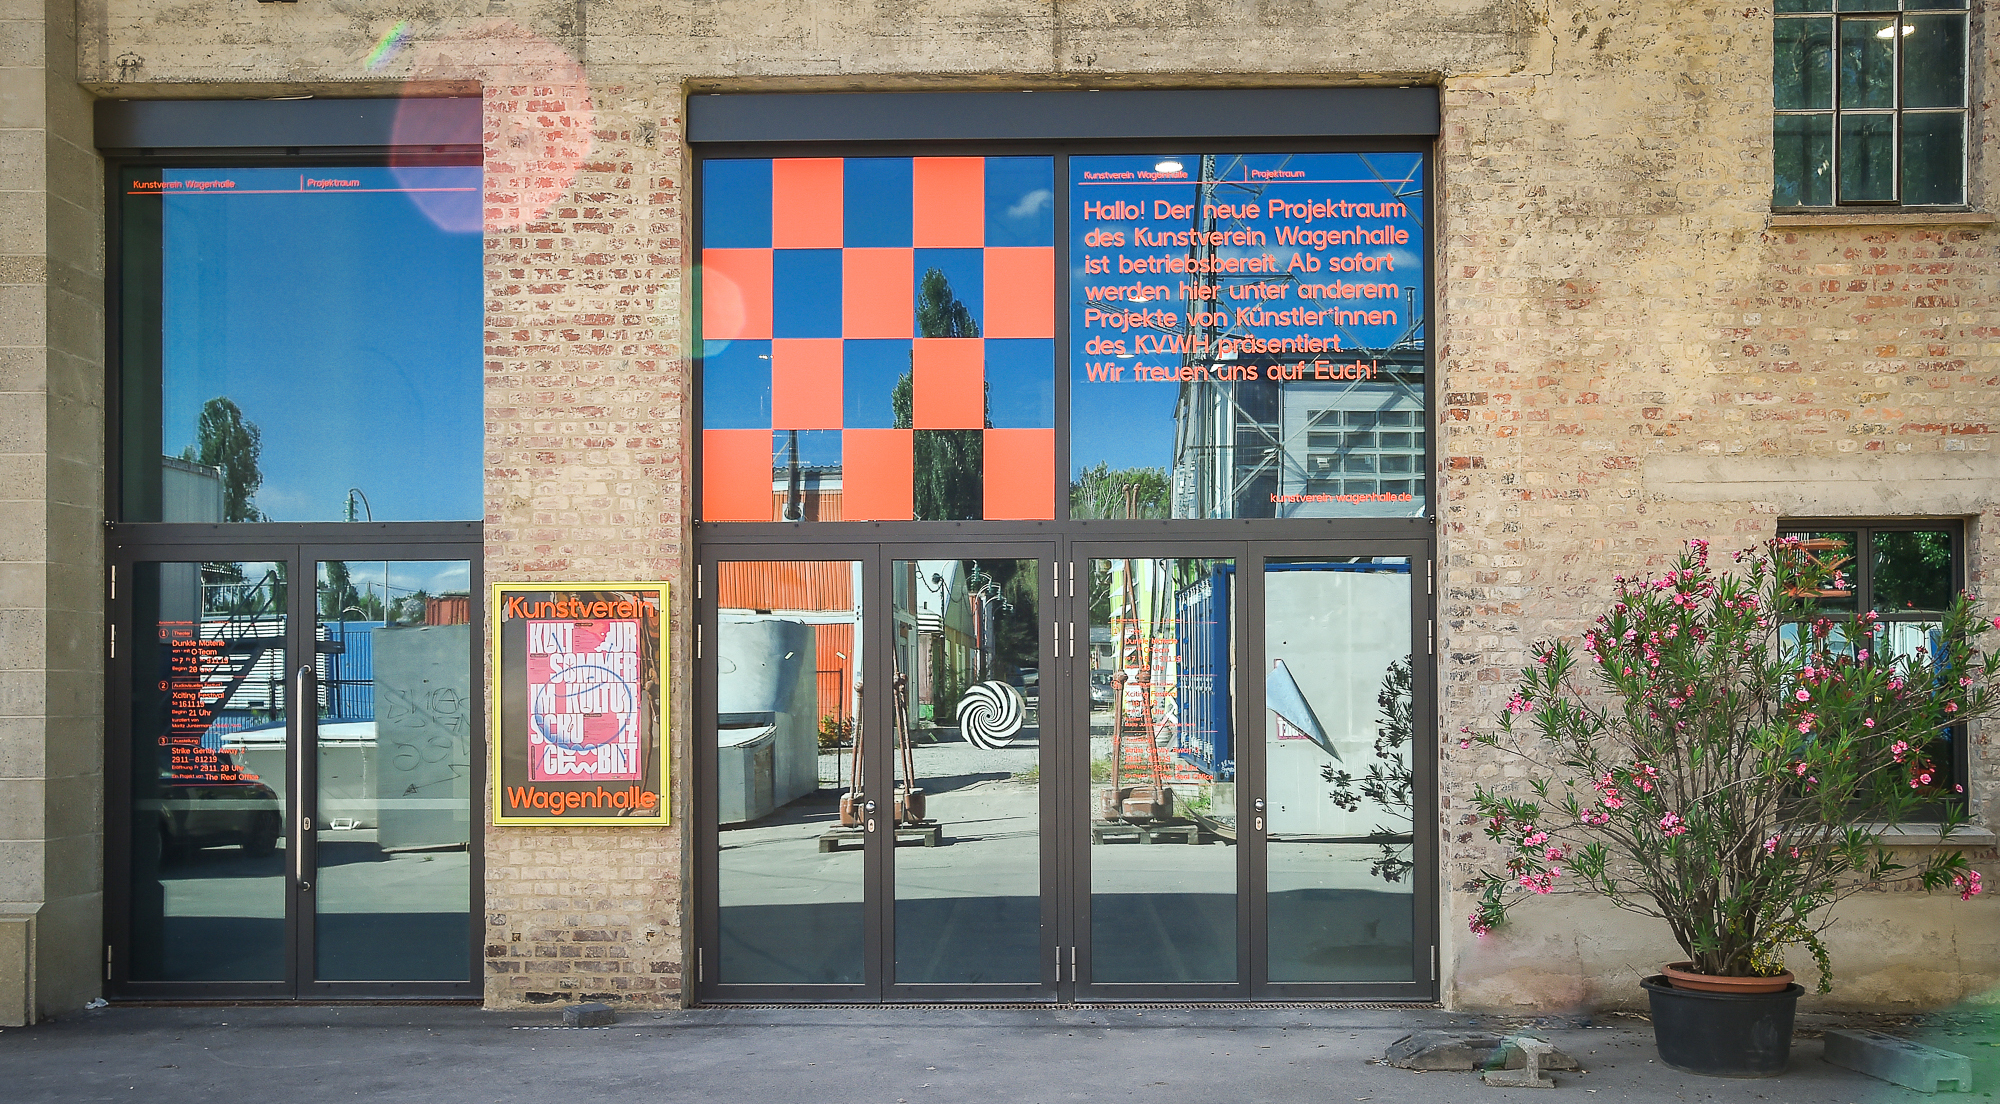 Foto 1/3: Außenansicht Projektraum Kunstverein Wagenhalle / Ferdinando Iannone (c) 